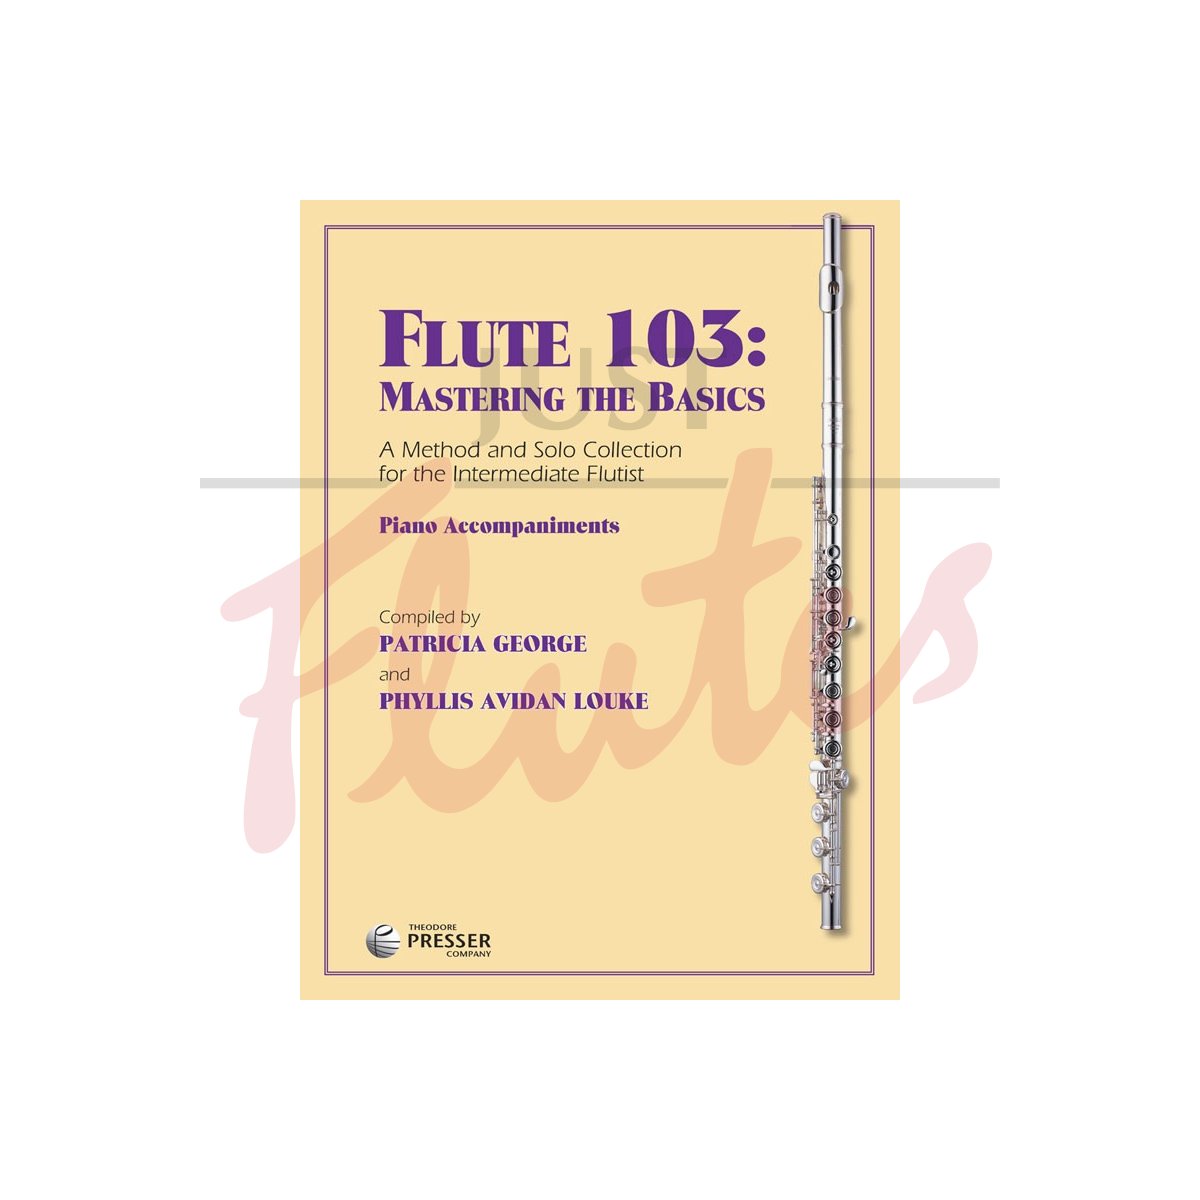 Flute 103 [Piano Accompaniment Book]